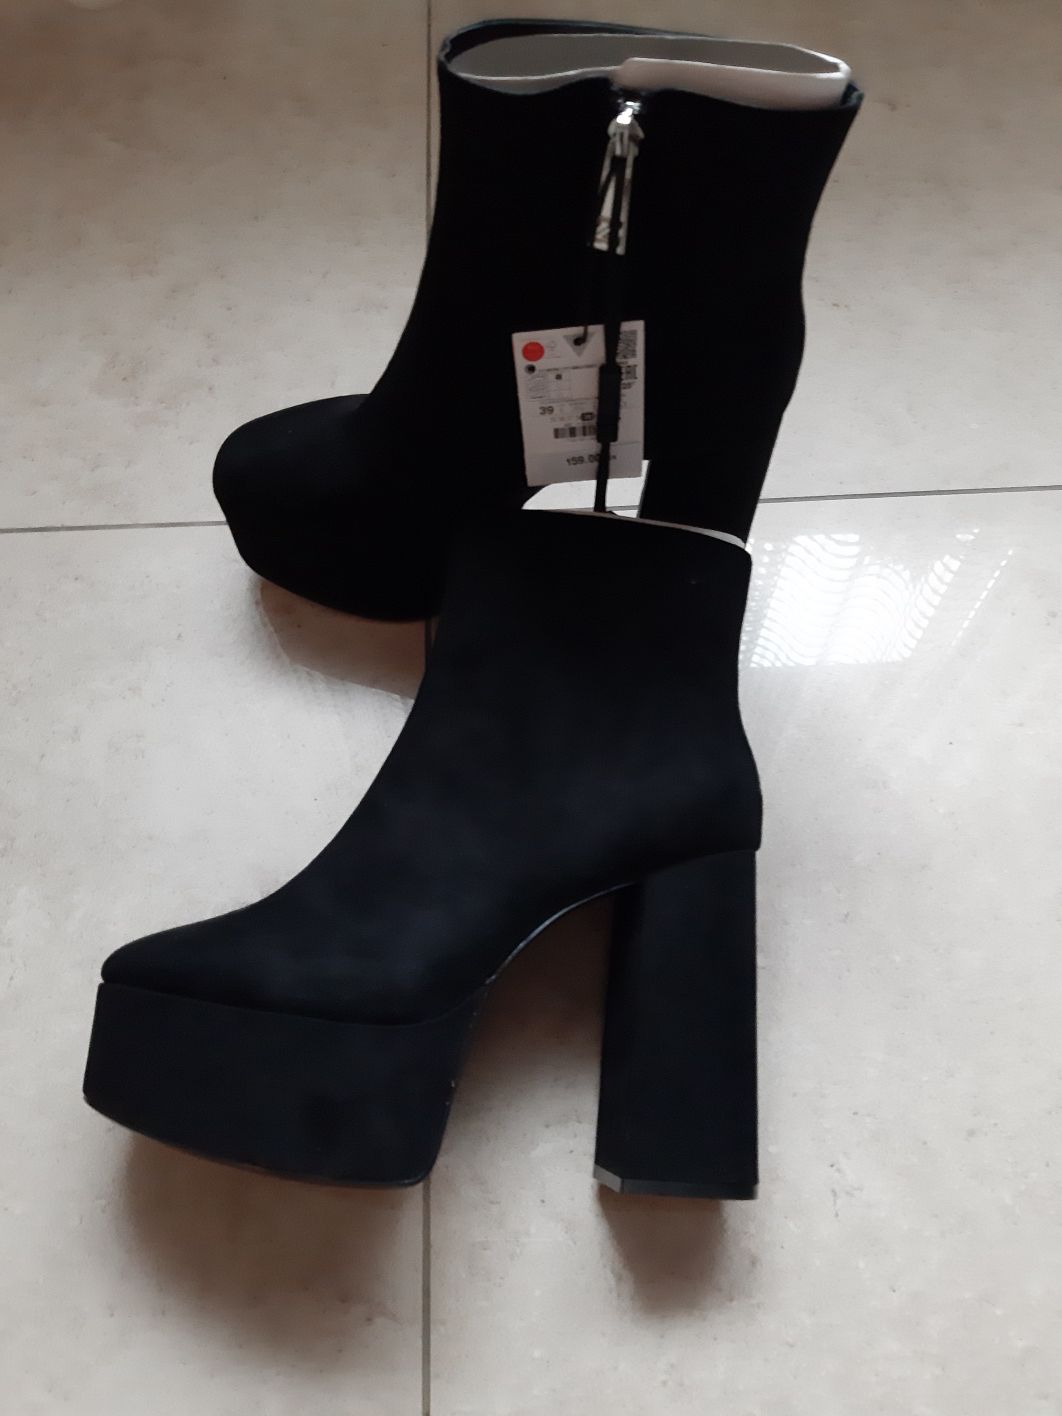 Buty kozaki botki Zara Woman 39 obcas słupek imitacja zamsz czarne mus